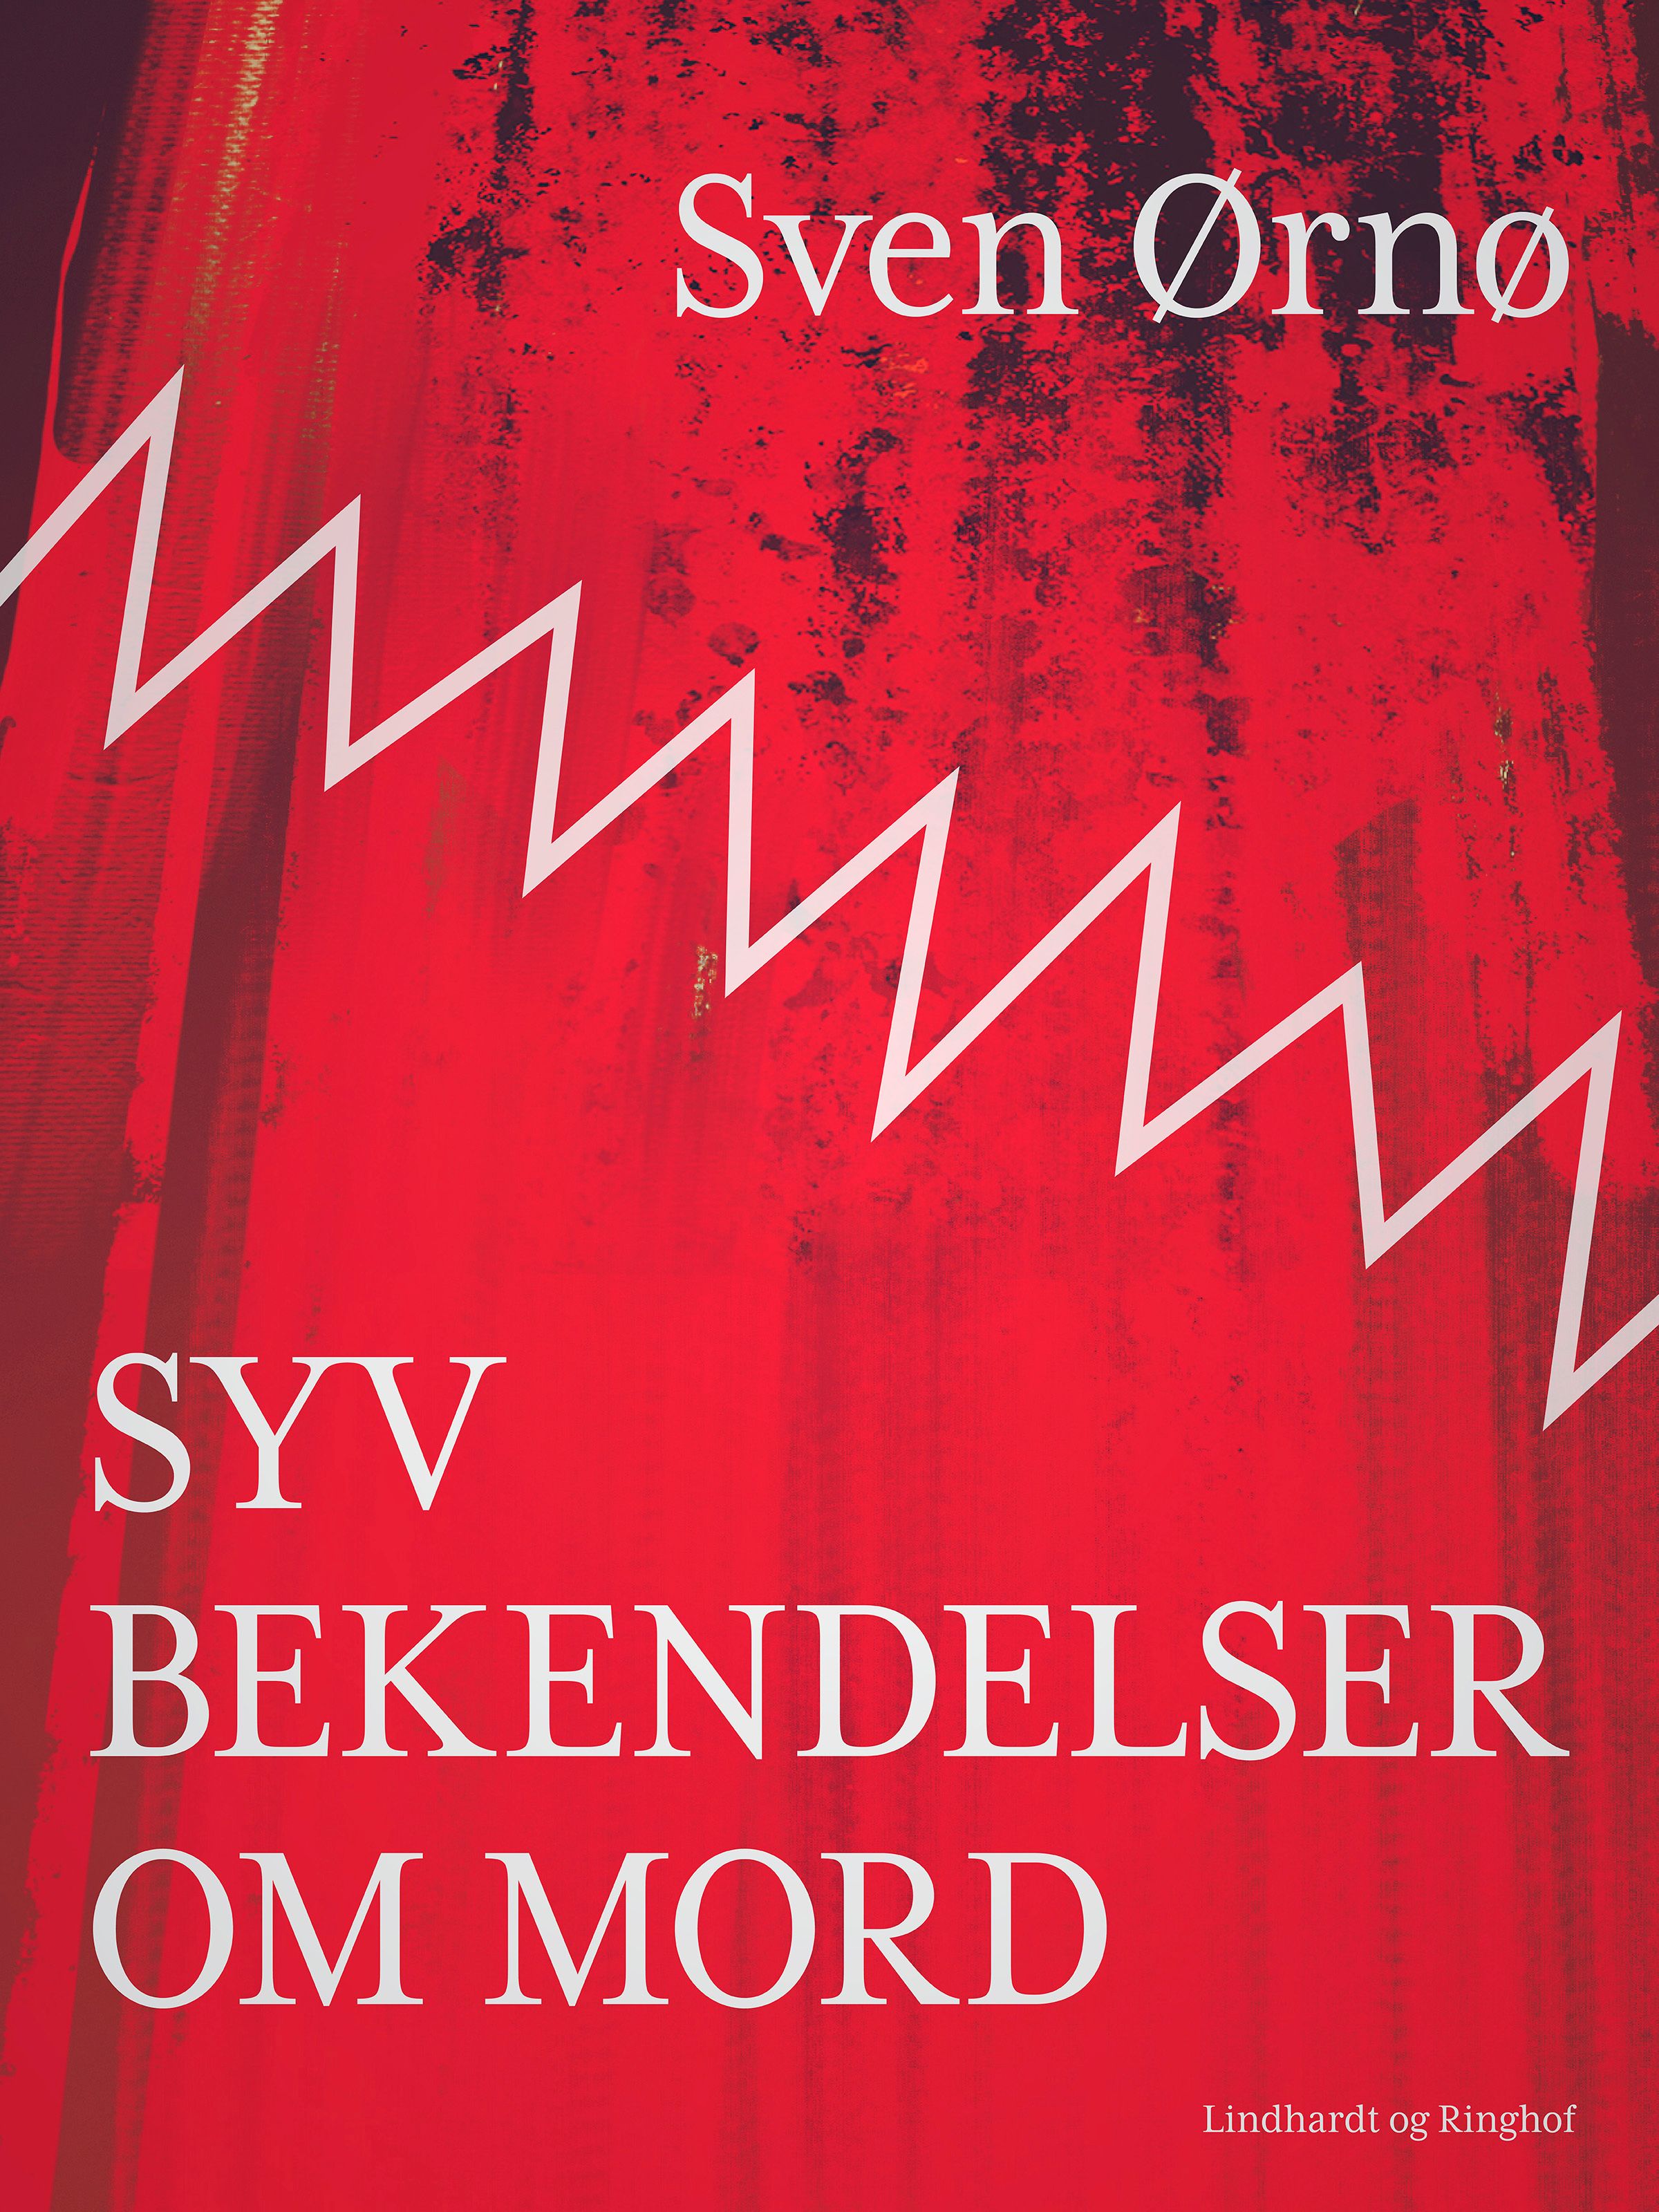 Syv bekendelser om mord, lydbog af Sven Ørnø